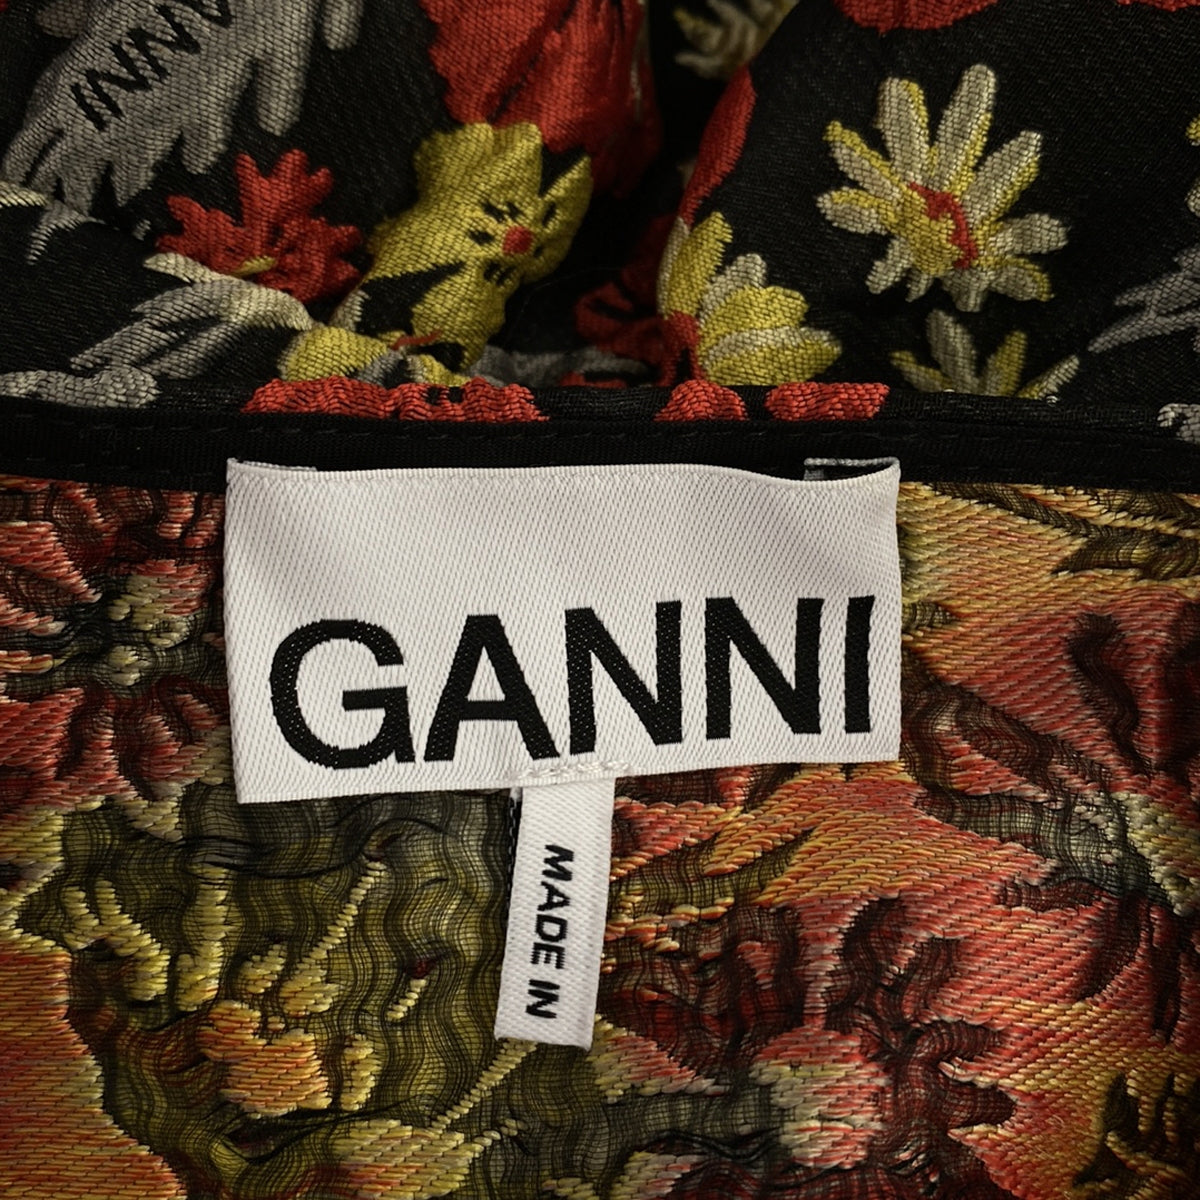 Ganni / ガニー | フラワージャガード ペプラム ブラウス | 38 | レディース